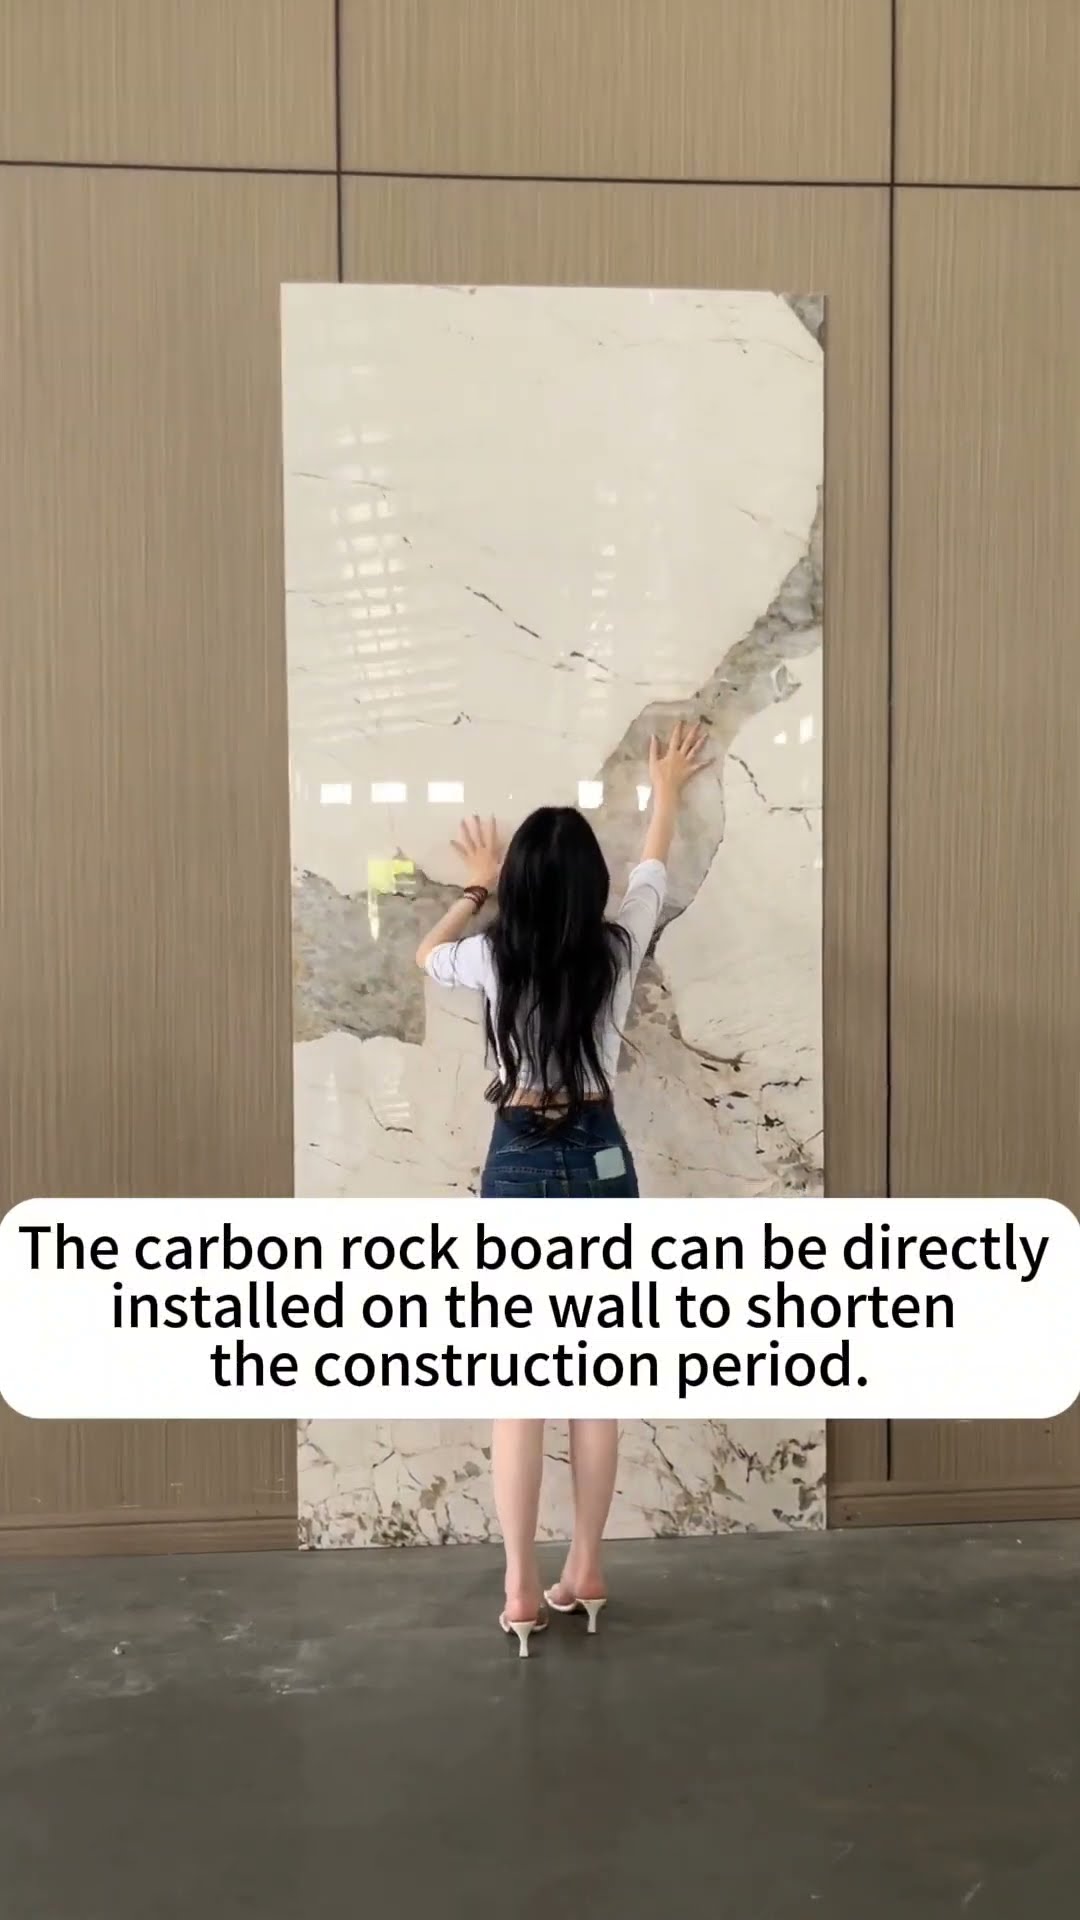 Carbon rock board. 碳岩板 